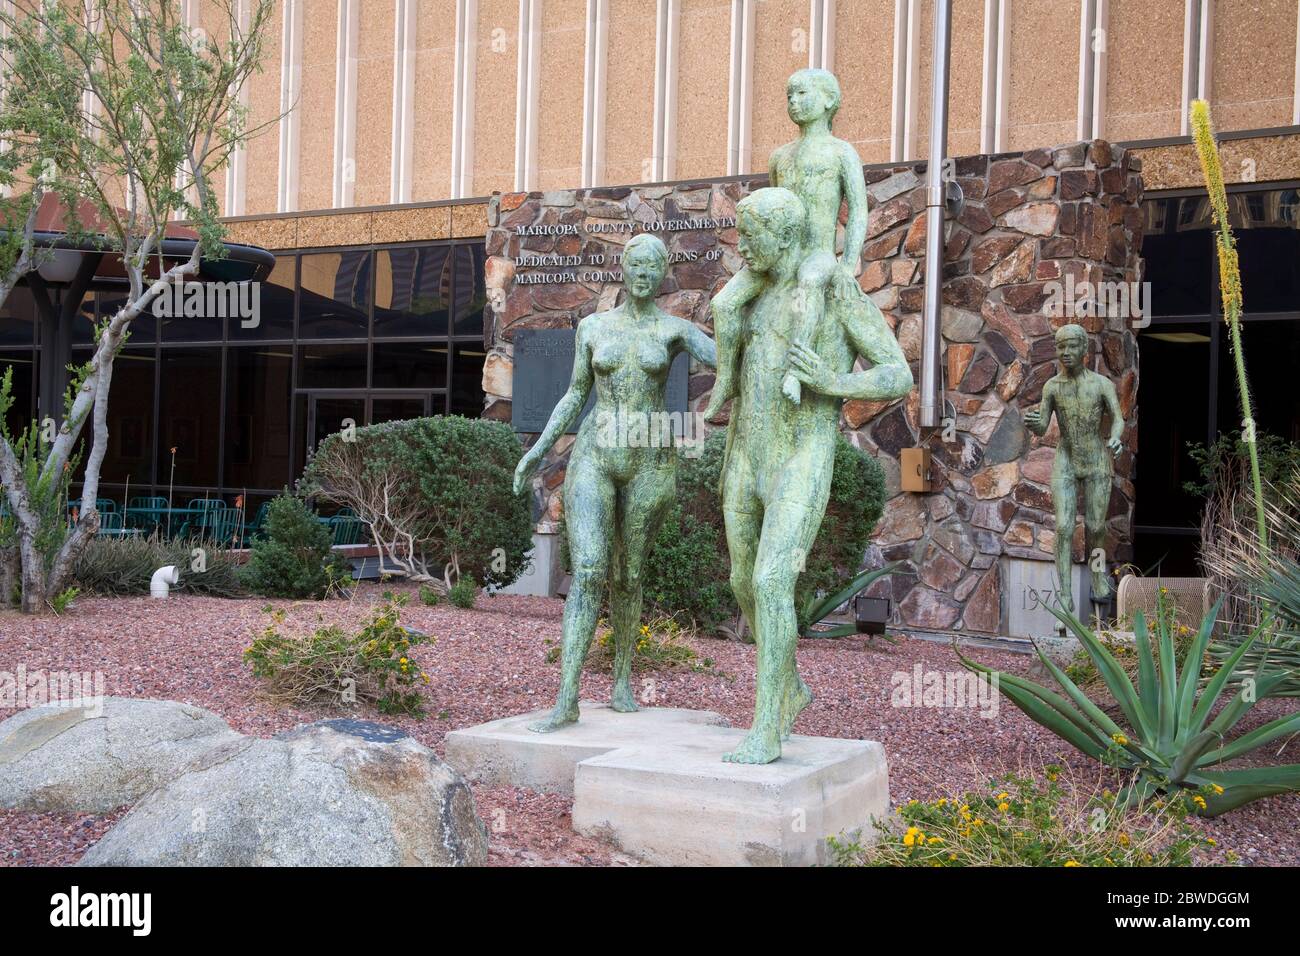 Escultura en el complejo gubernamental Maricopa, Phoenix, Arizona, EE.UU Foto de stock